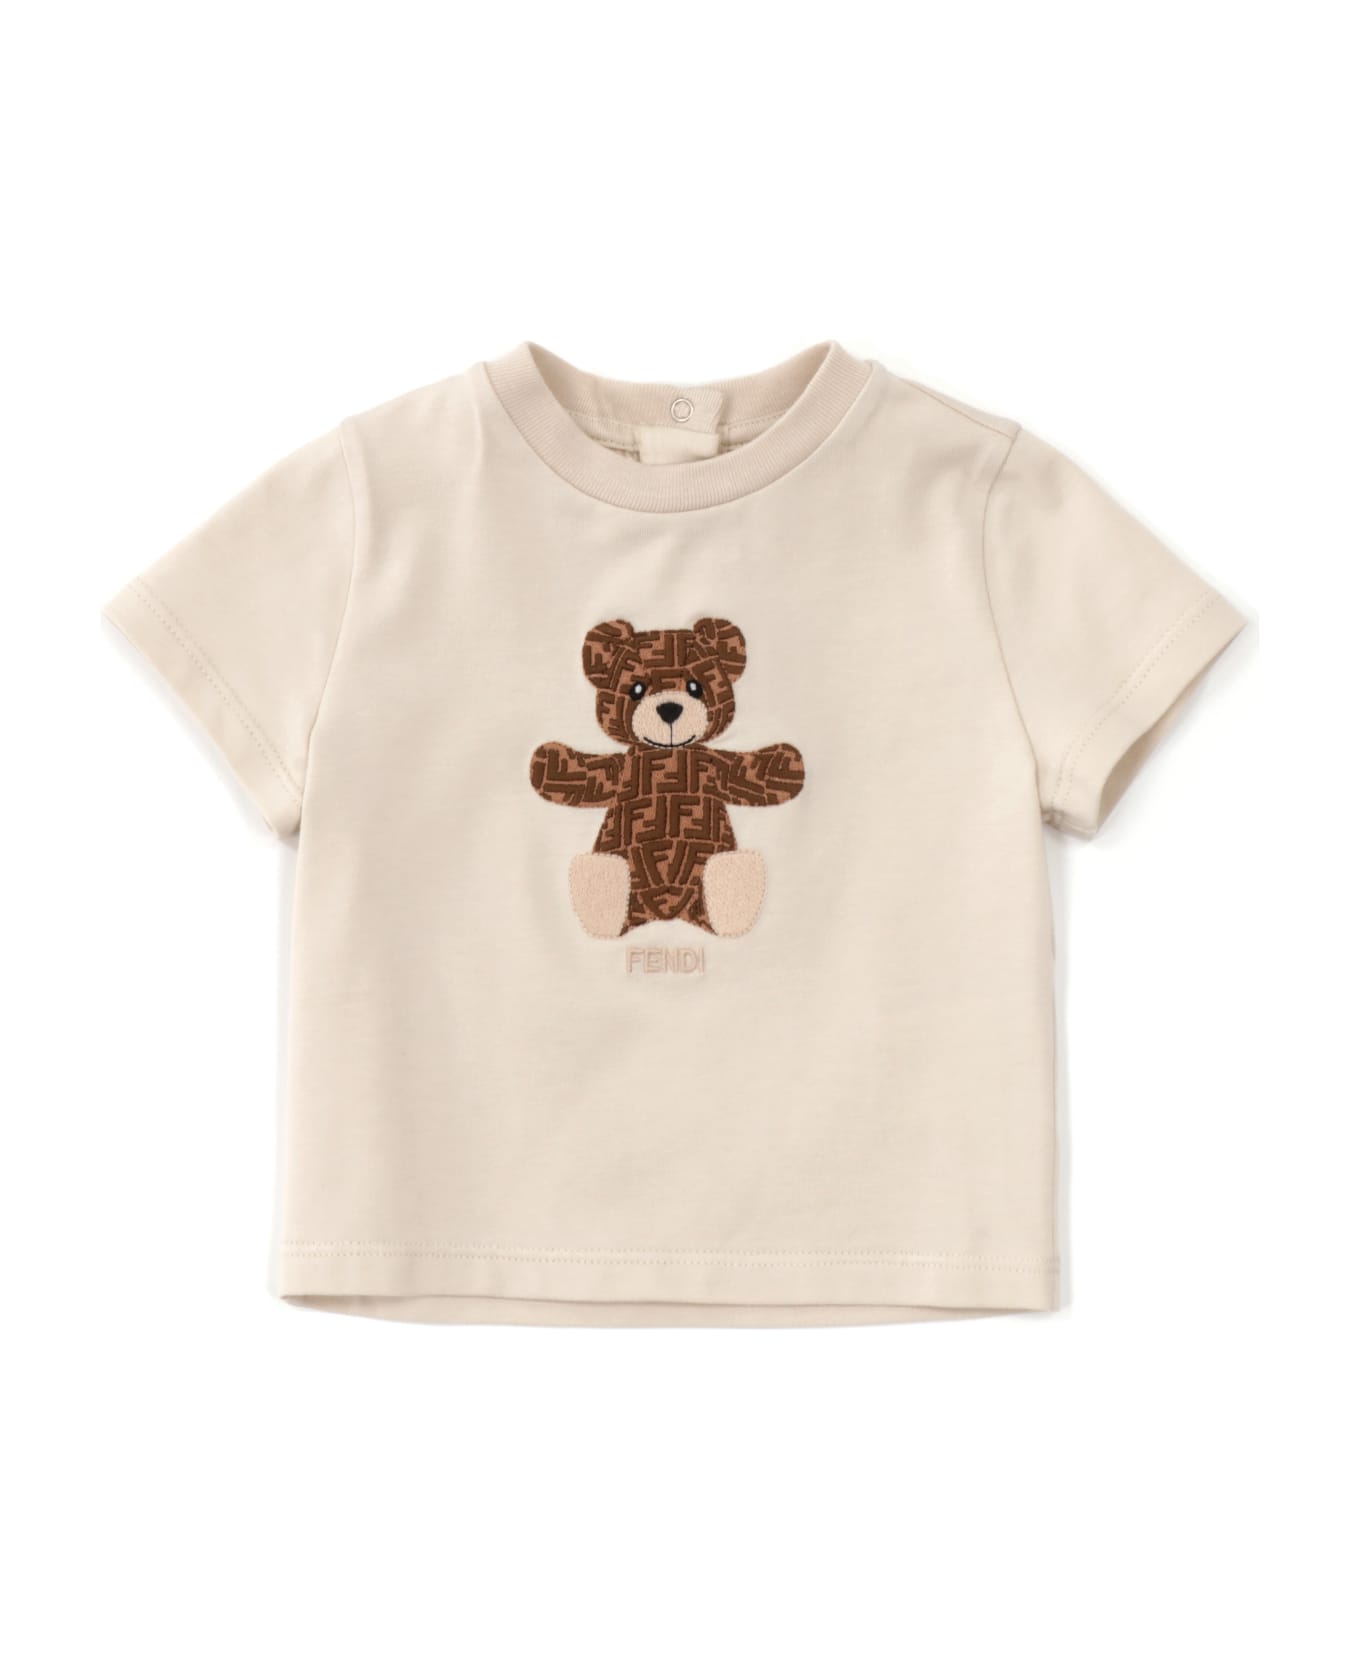 Fendi Teddy T-shirt - BEIGE